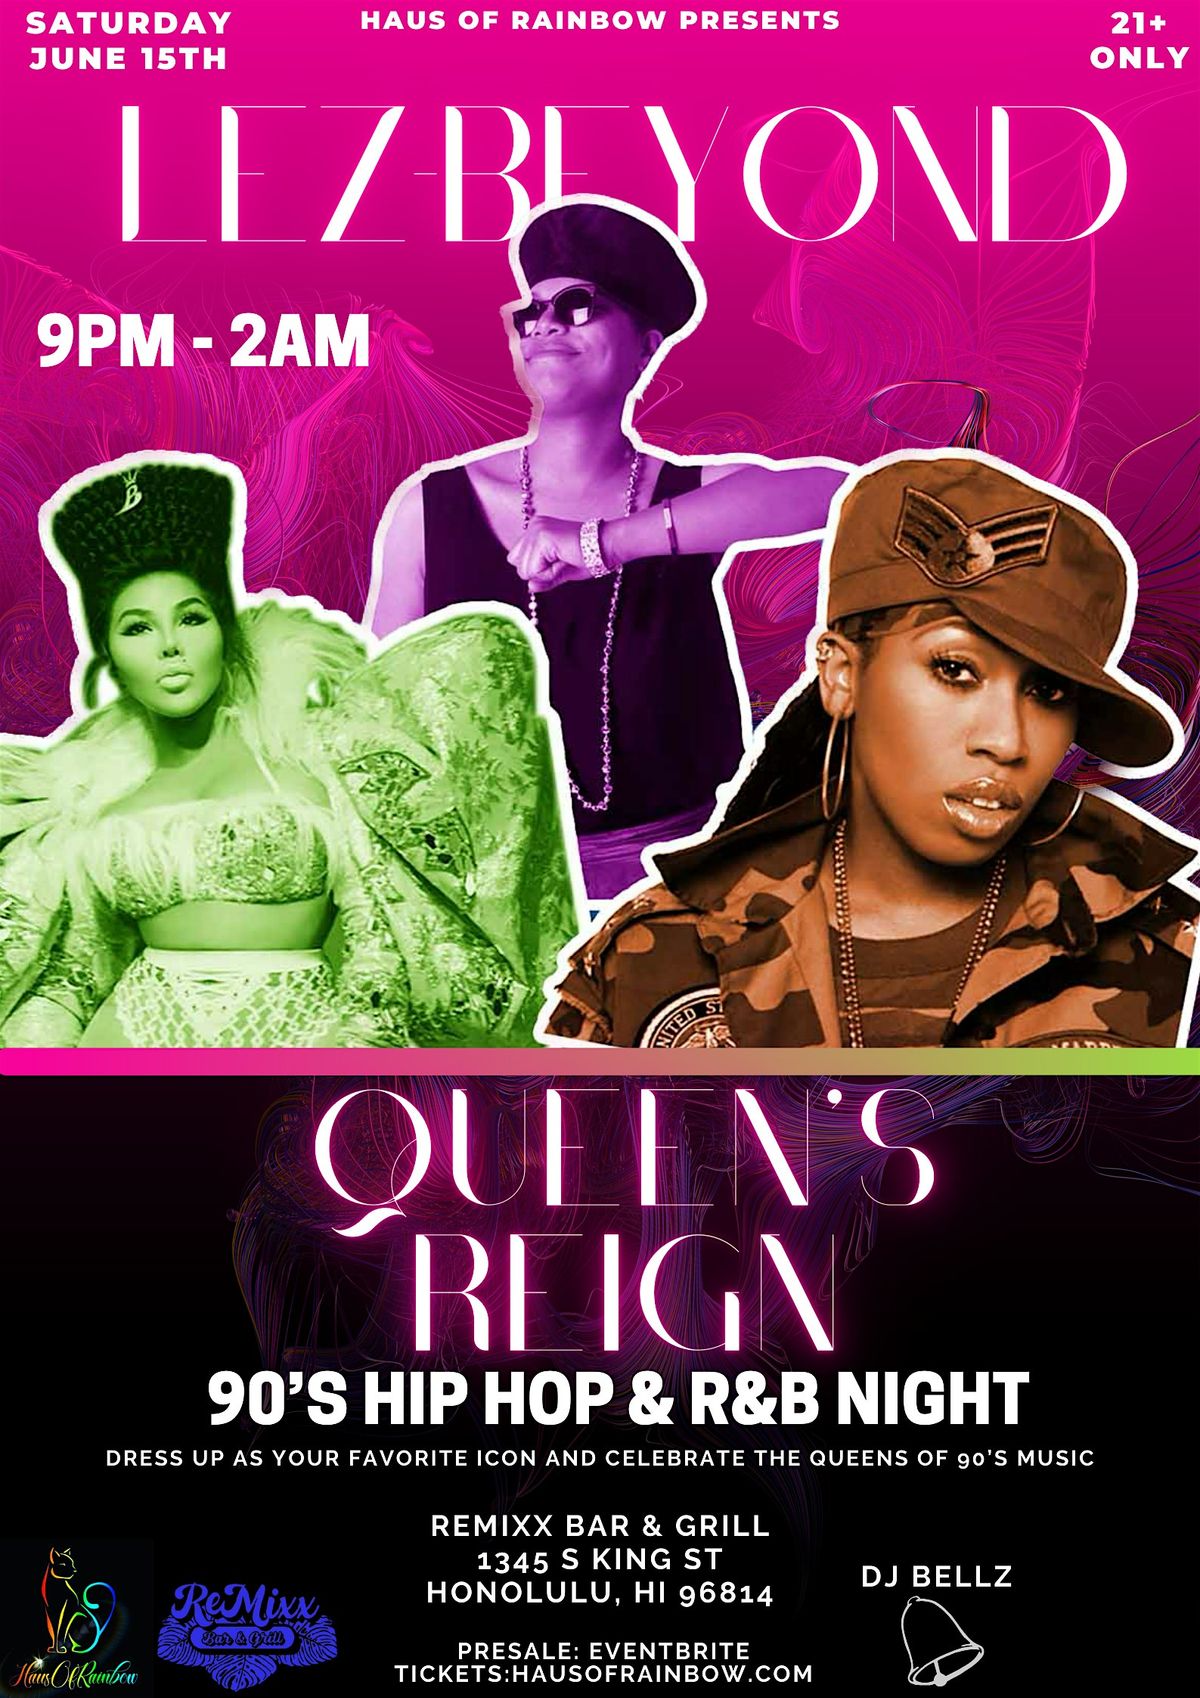 Lez-Beyond: Queens Reign - 90's Hip Hop & R&B Night